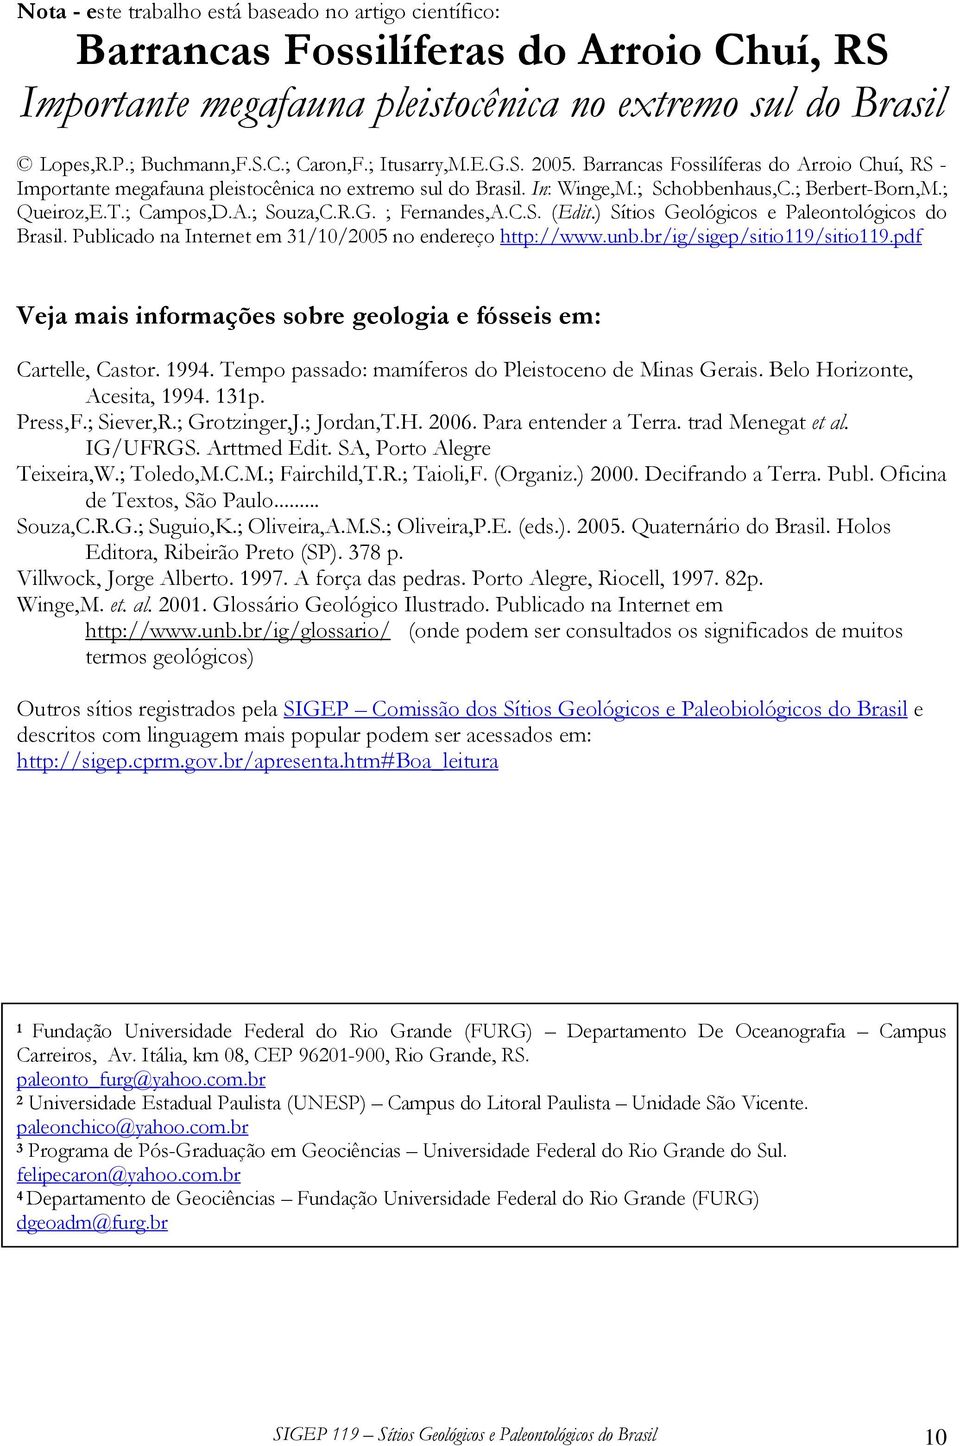 ; Campos,D.A.; Souza,C.R.G. ; Fernandes,A.C.S. (Edit.) Sítios Geológicos e Paleontológicos do Brasil. Publicado na Internet em 31/10/2005 no endereço http://www.unb.br/ig/sigep/sitio119/sitio119.